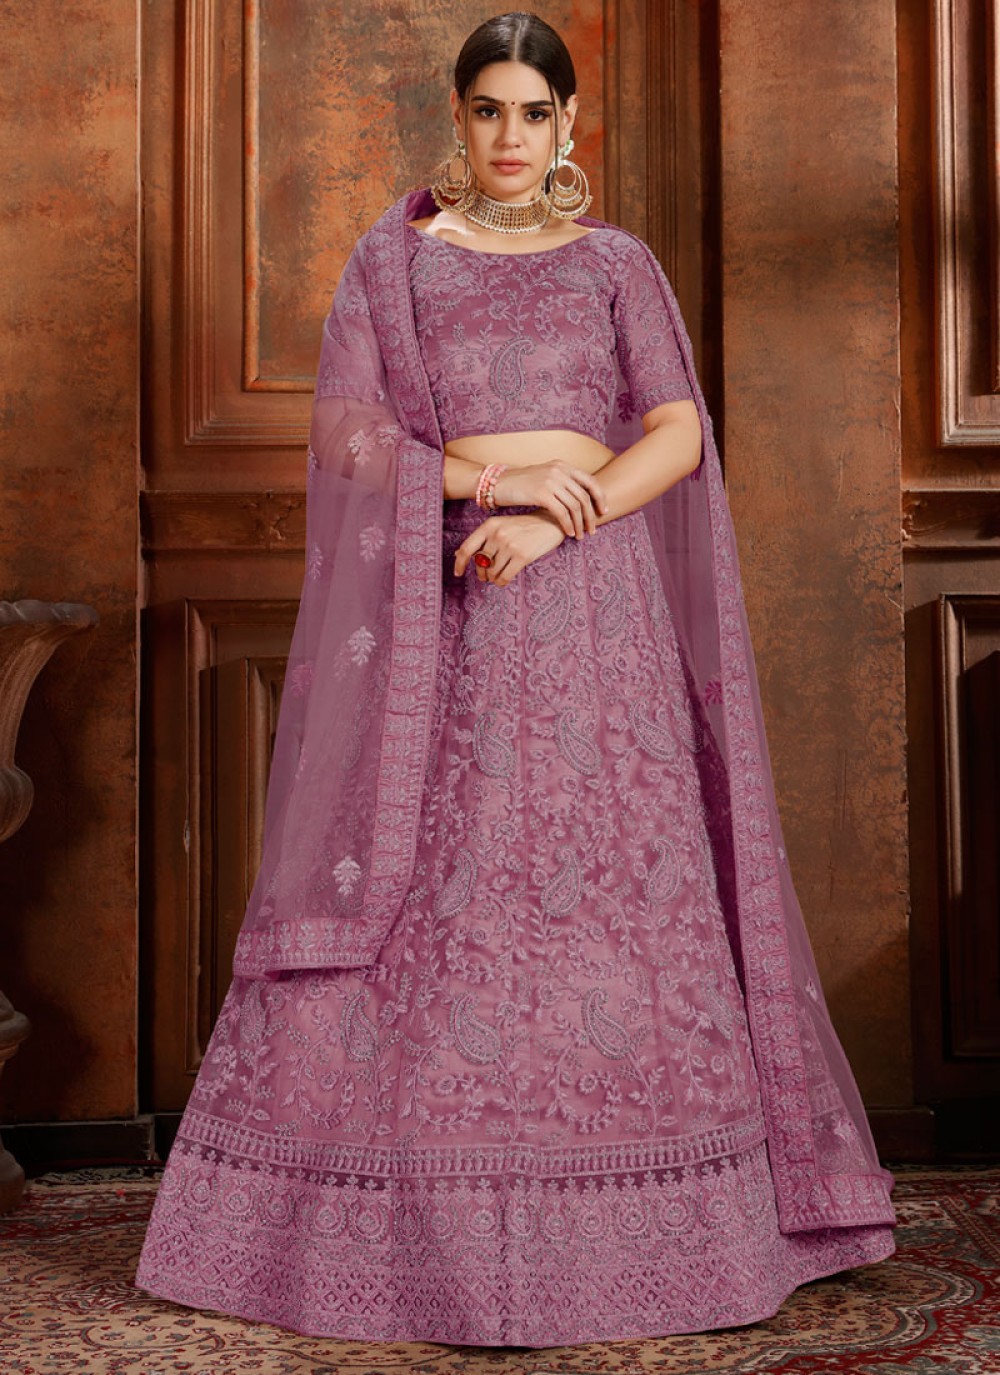 Details more than 161 violet colour lehenga best